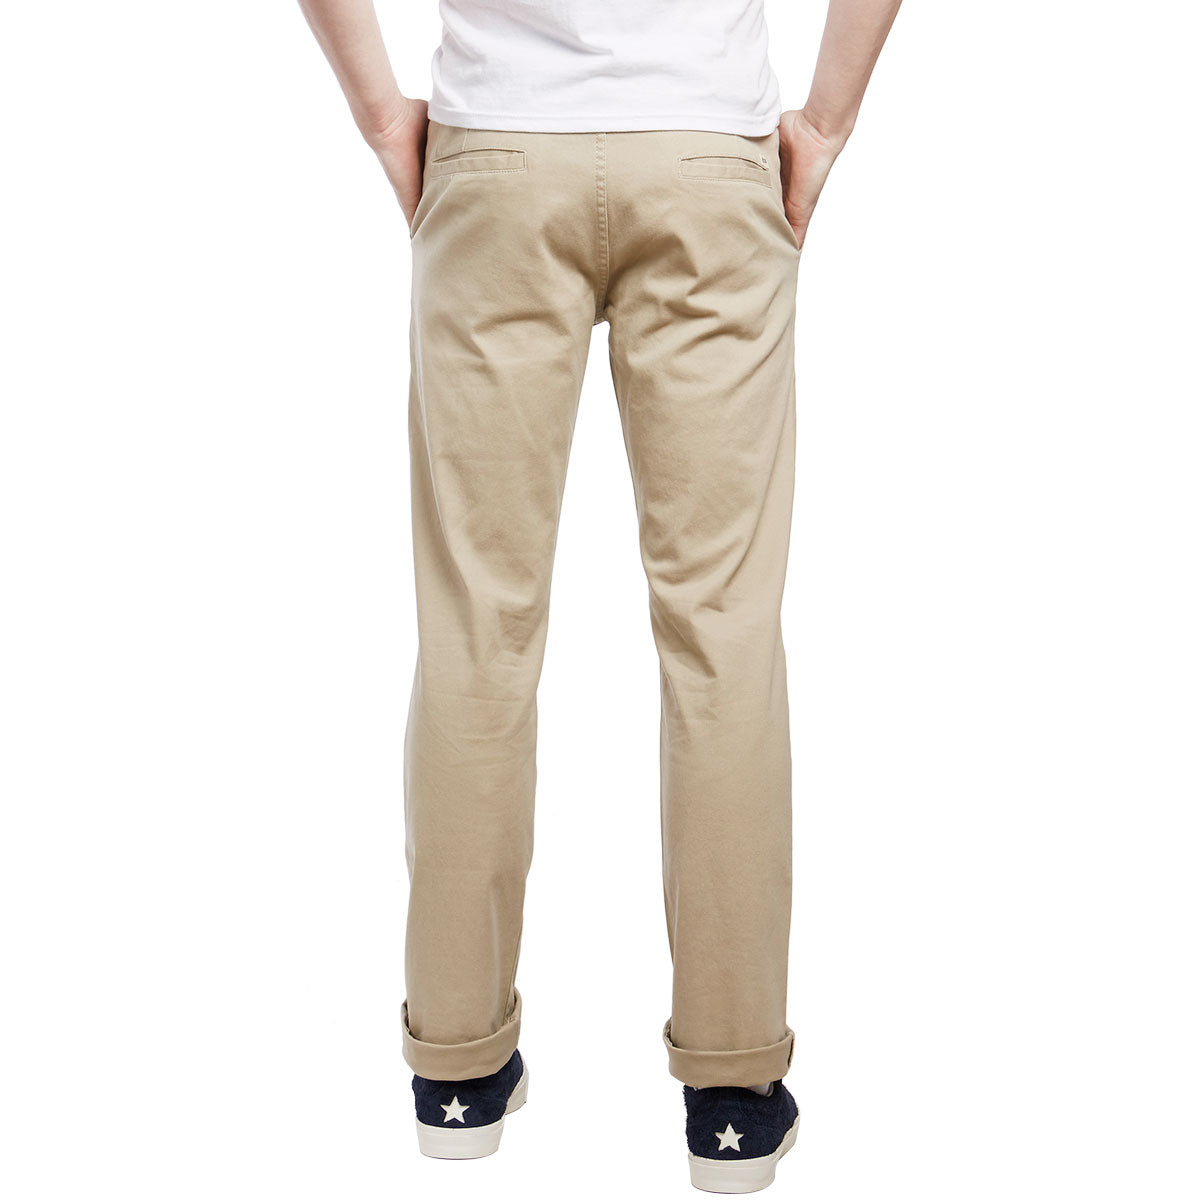 CCS Straight Fit Chino Pants - Light Khaki image 3